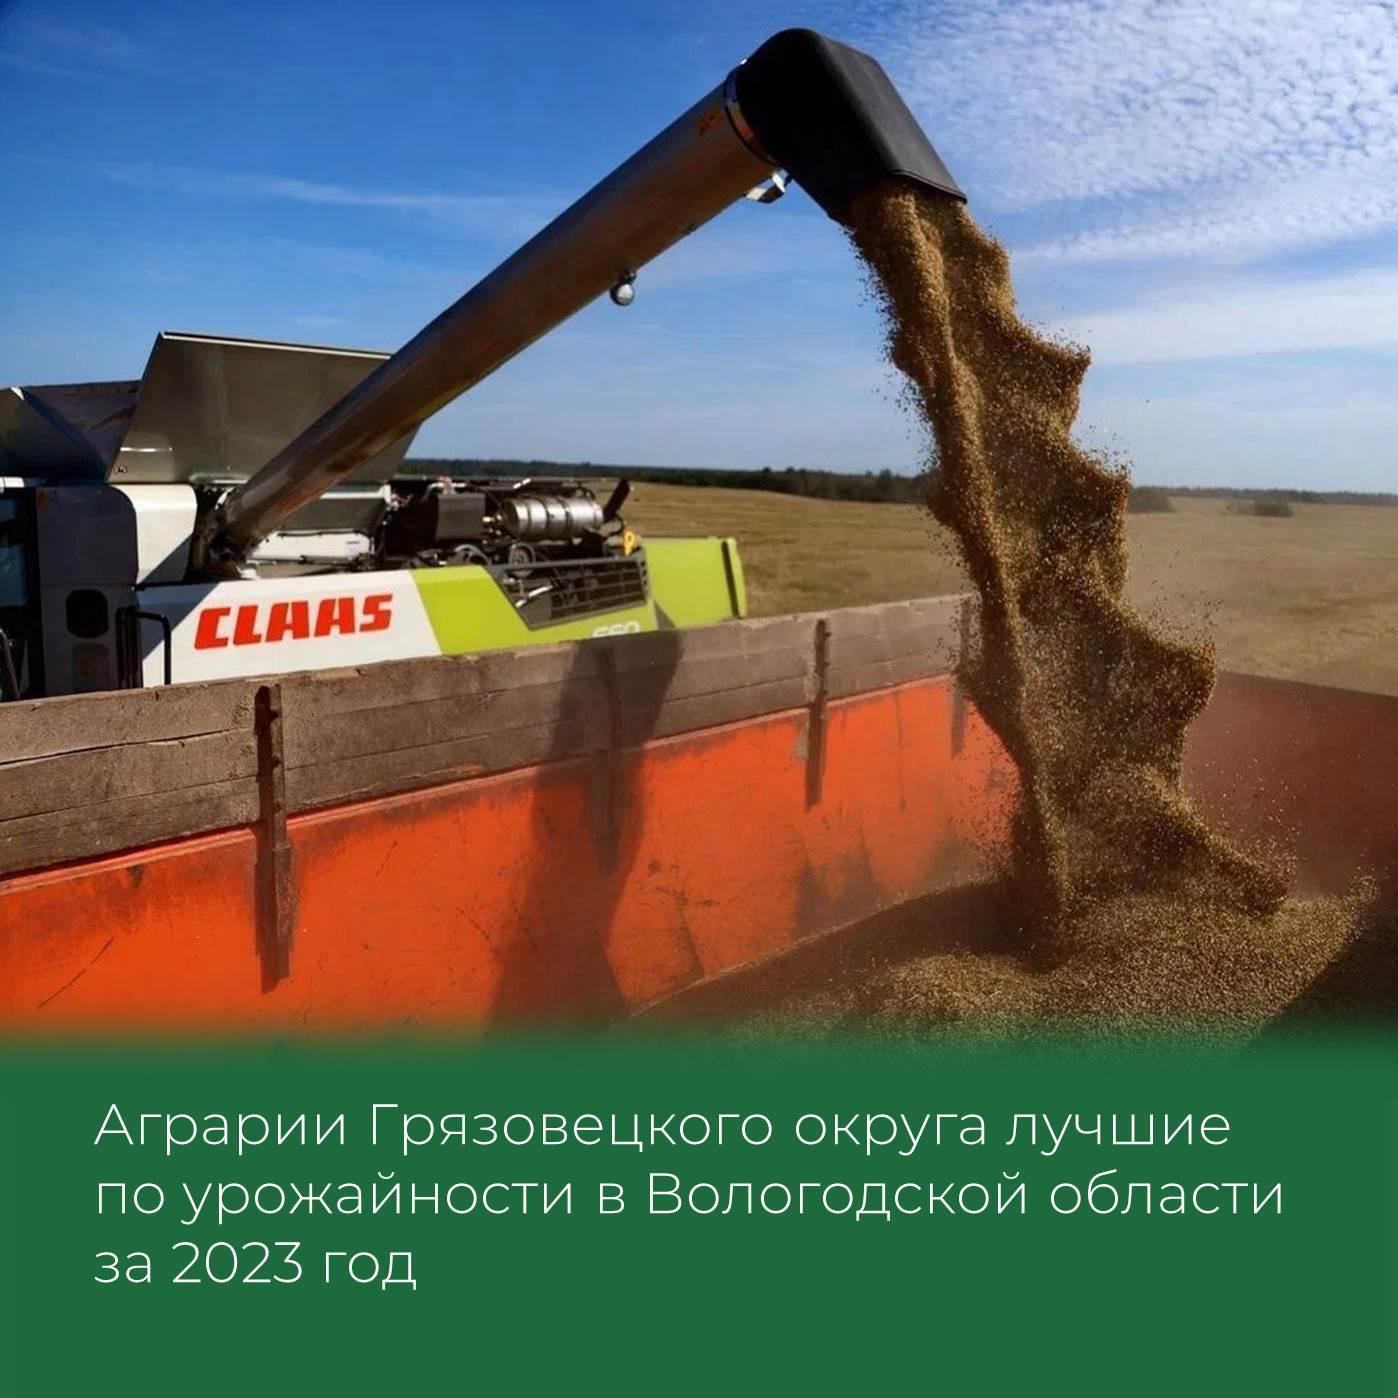 Аграрии Грязовецкого округа лучшие по урожайности в Вологодской области за 2023 год.